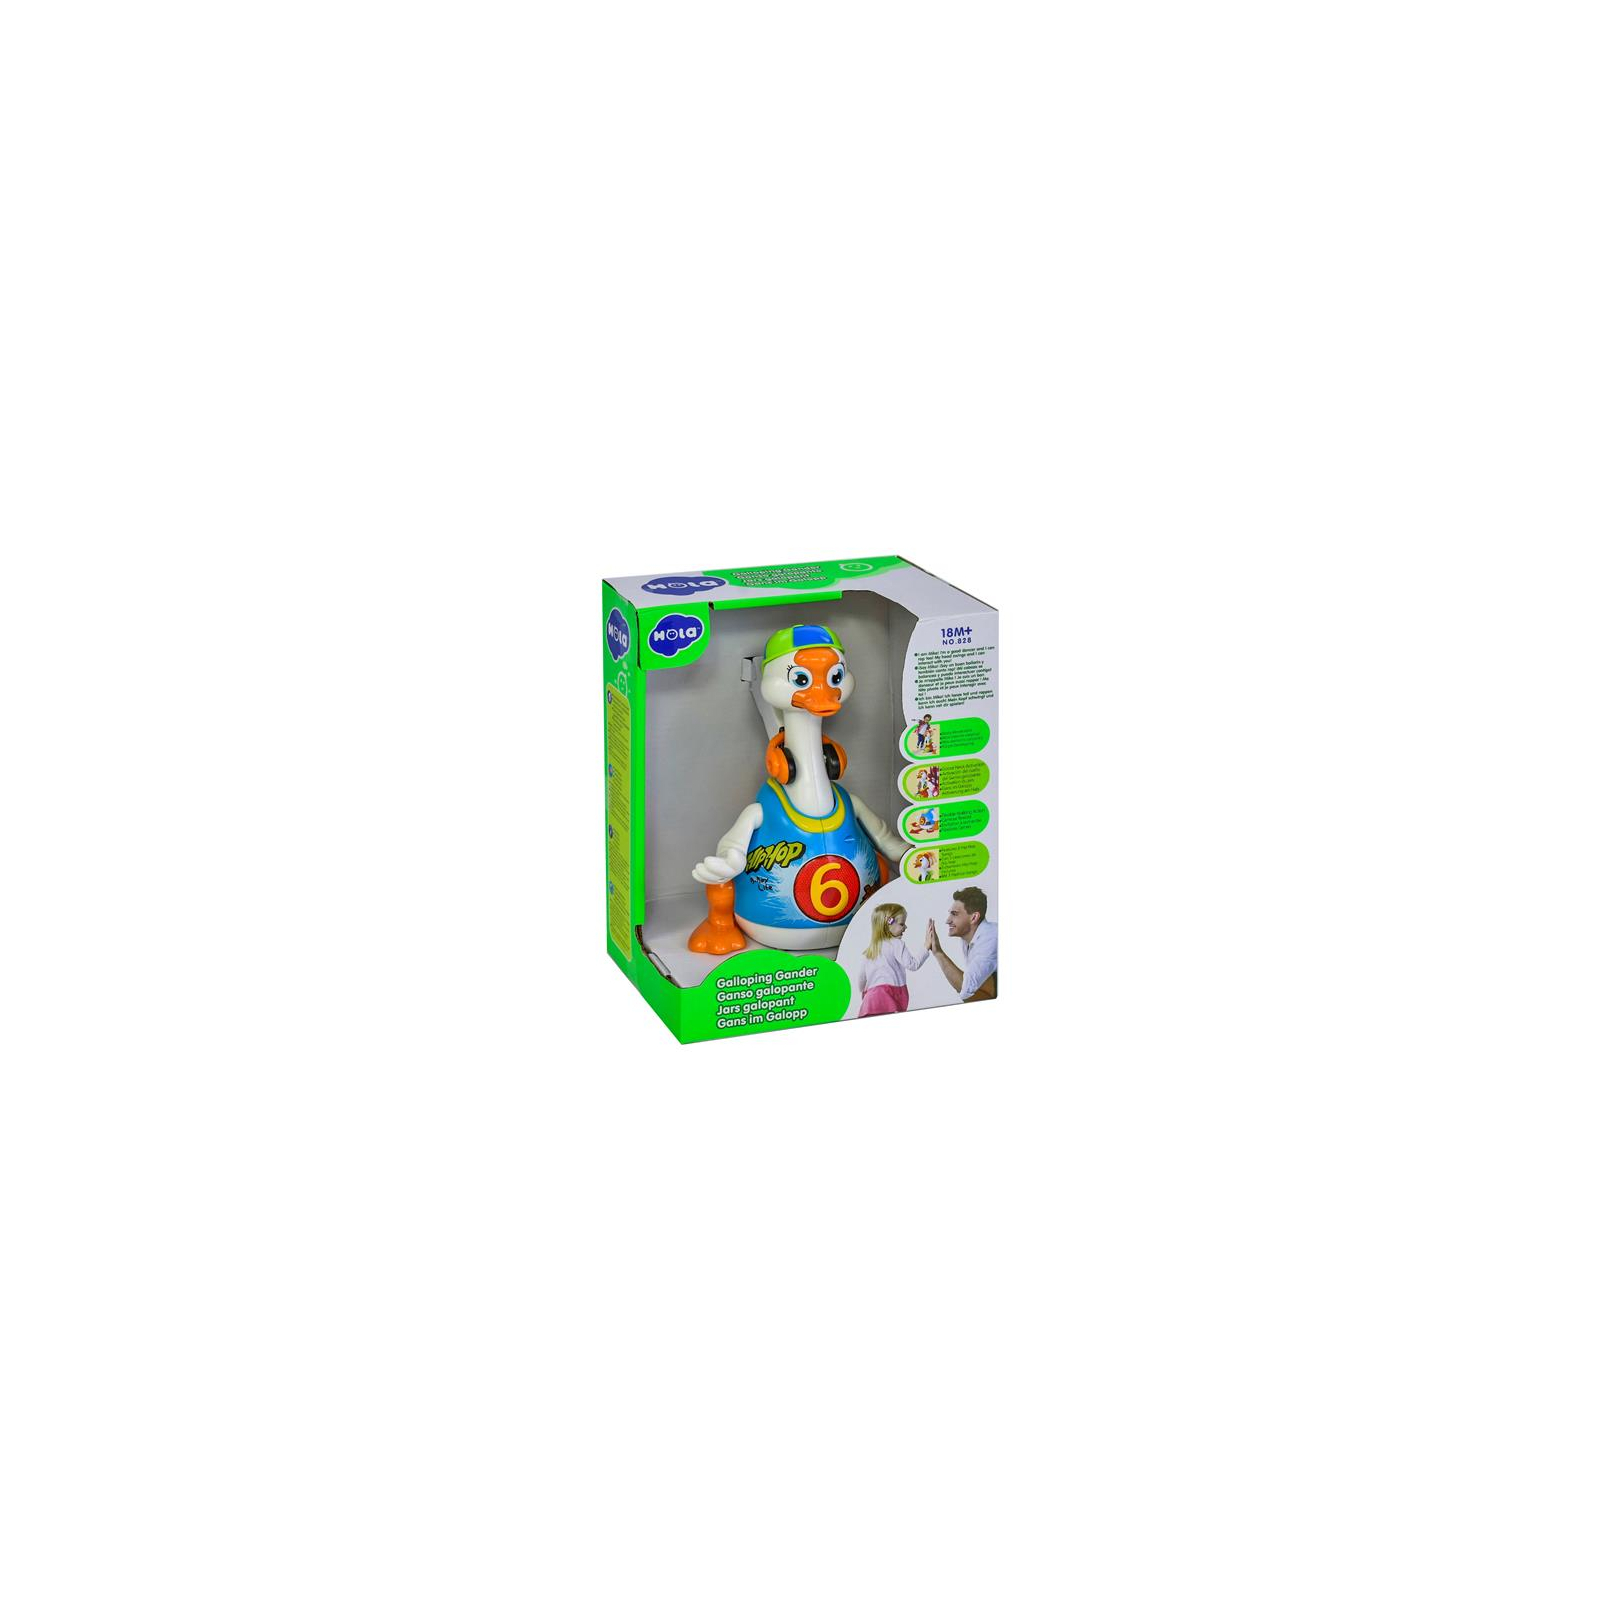 Развивающая игрушка Hola Toys Танцующий гусь (828-blue) изображение 2